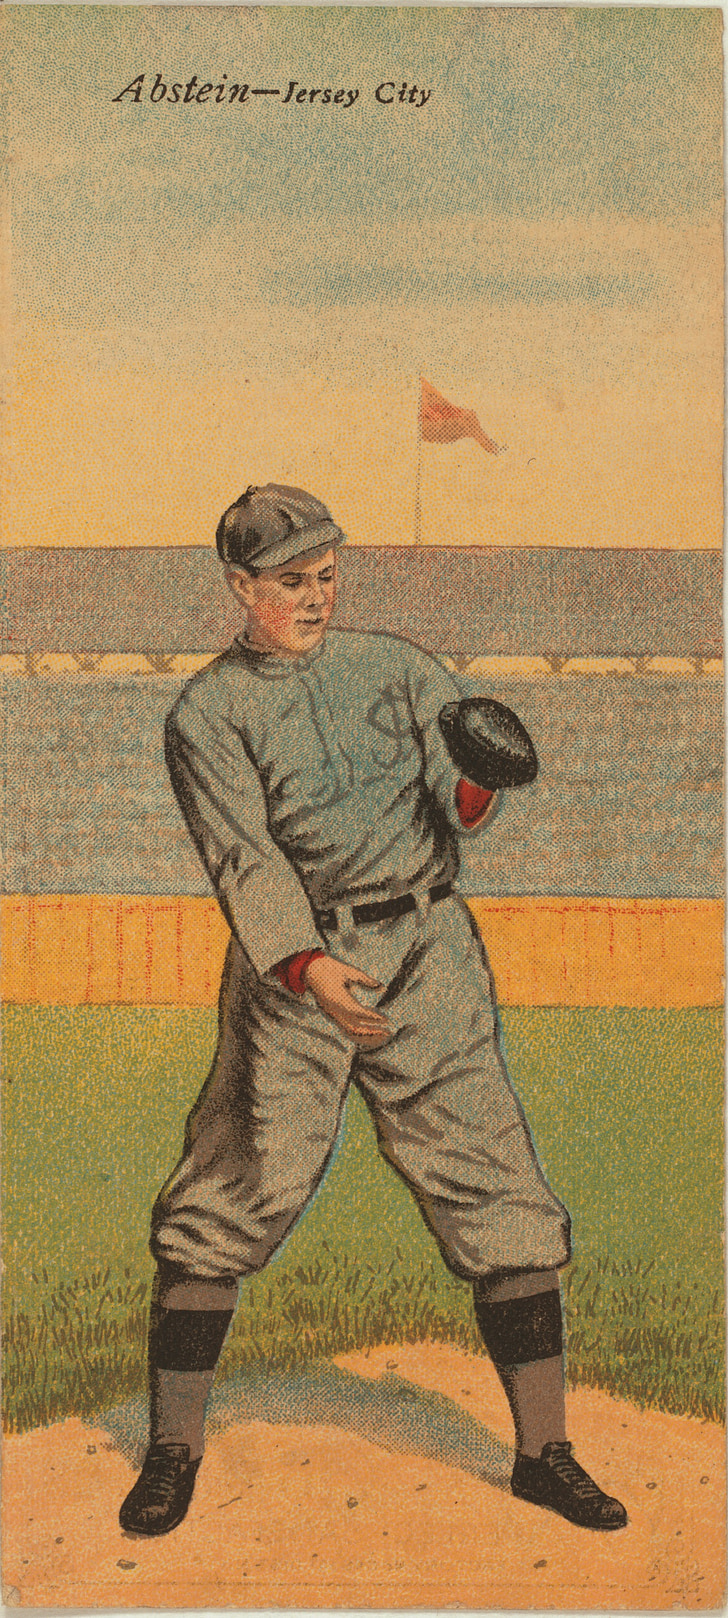 Hinterhof baseball, Baseball-Karten, Baseball Trikots, Baseball-Hose, Baseball-Uniformen-Geschichte, Vintage Baseball-Karten kaufen, Spiele baseball